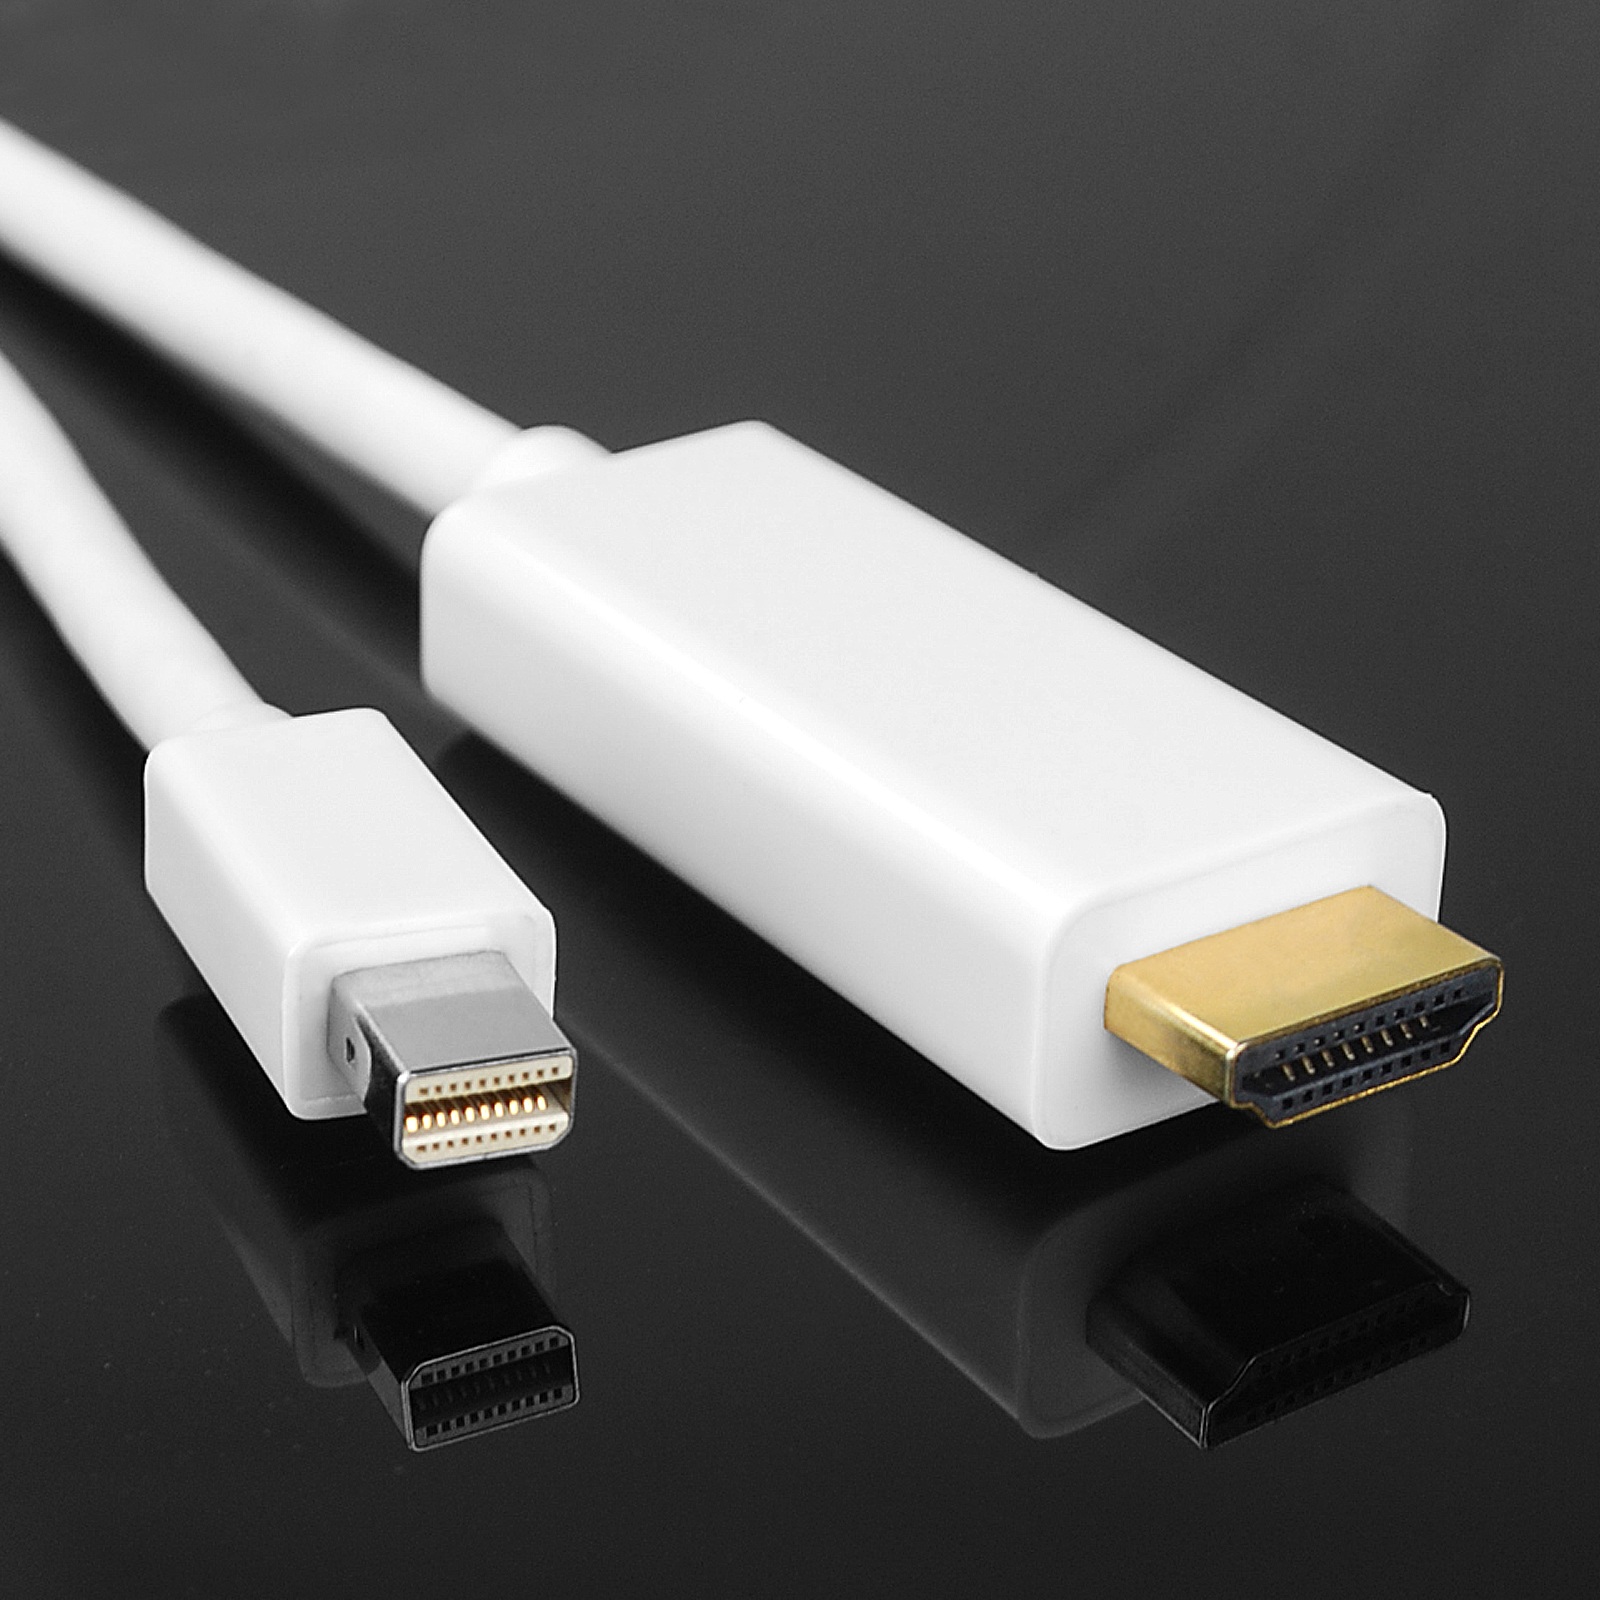 hdmi cord for macbook pro